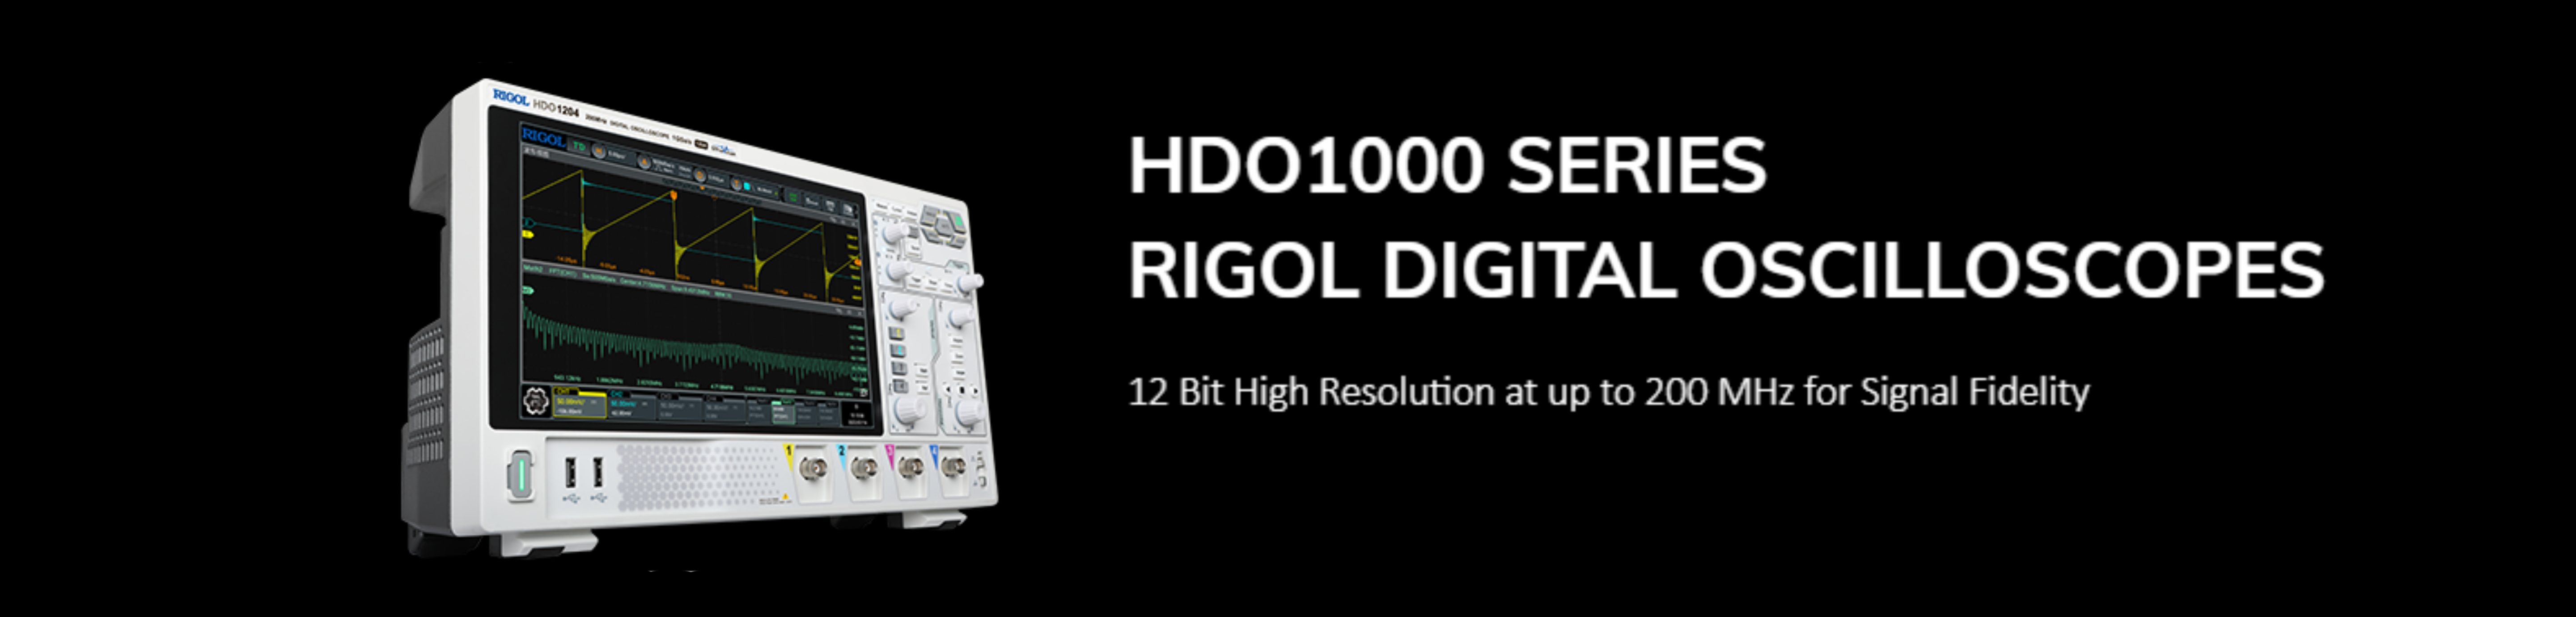 HDO1000